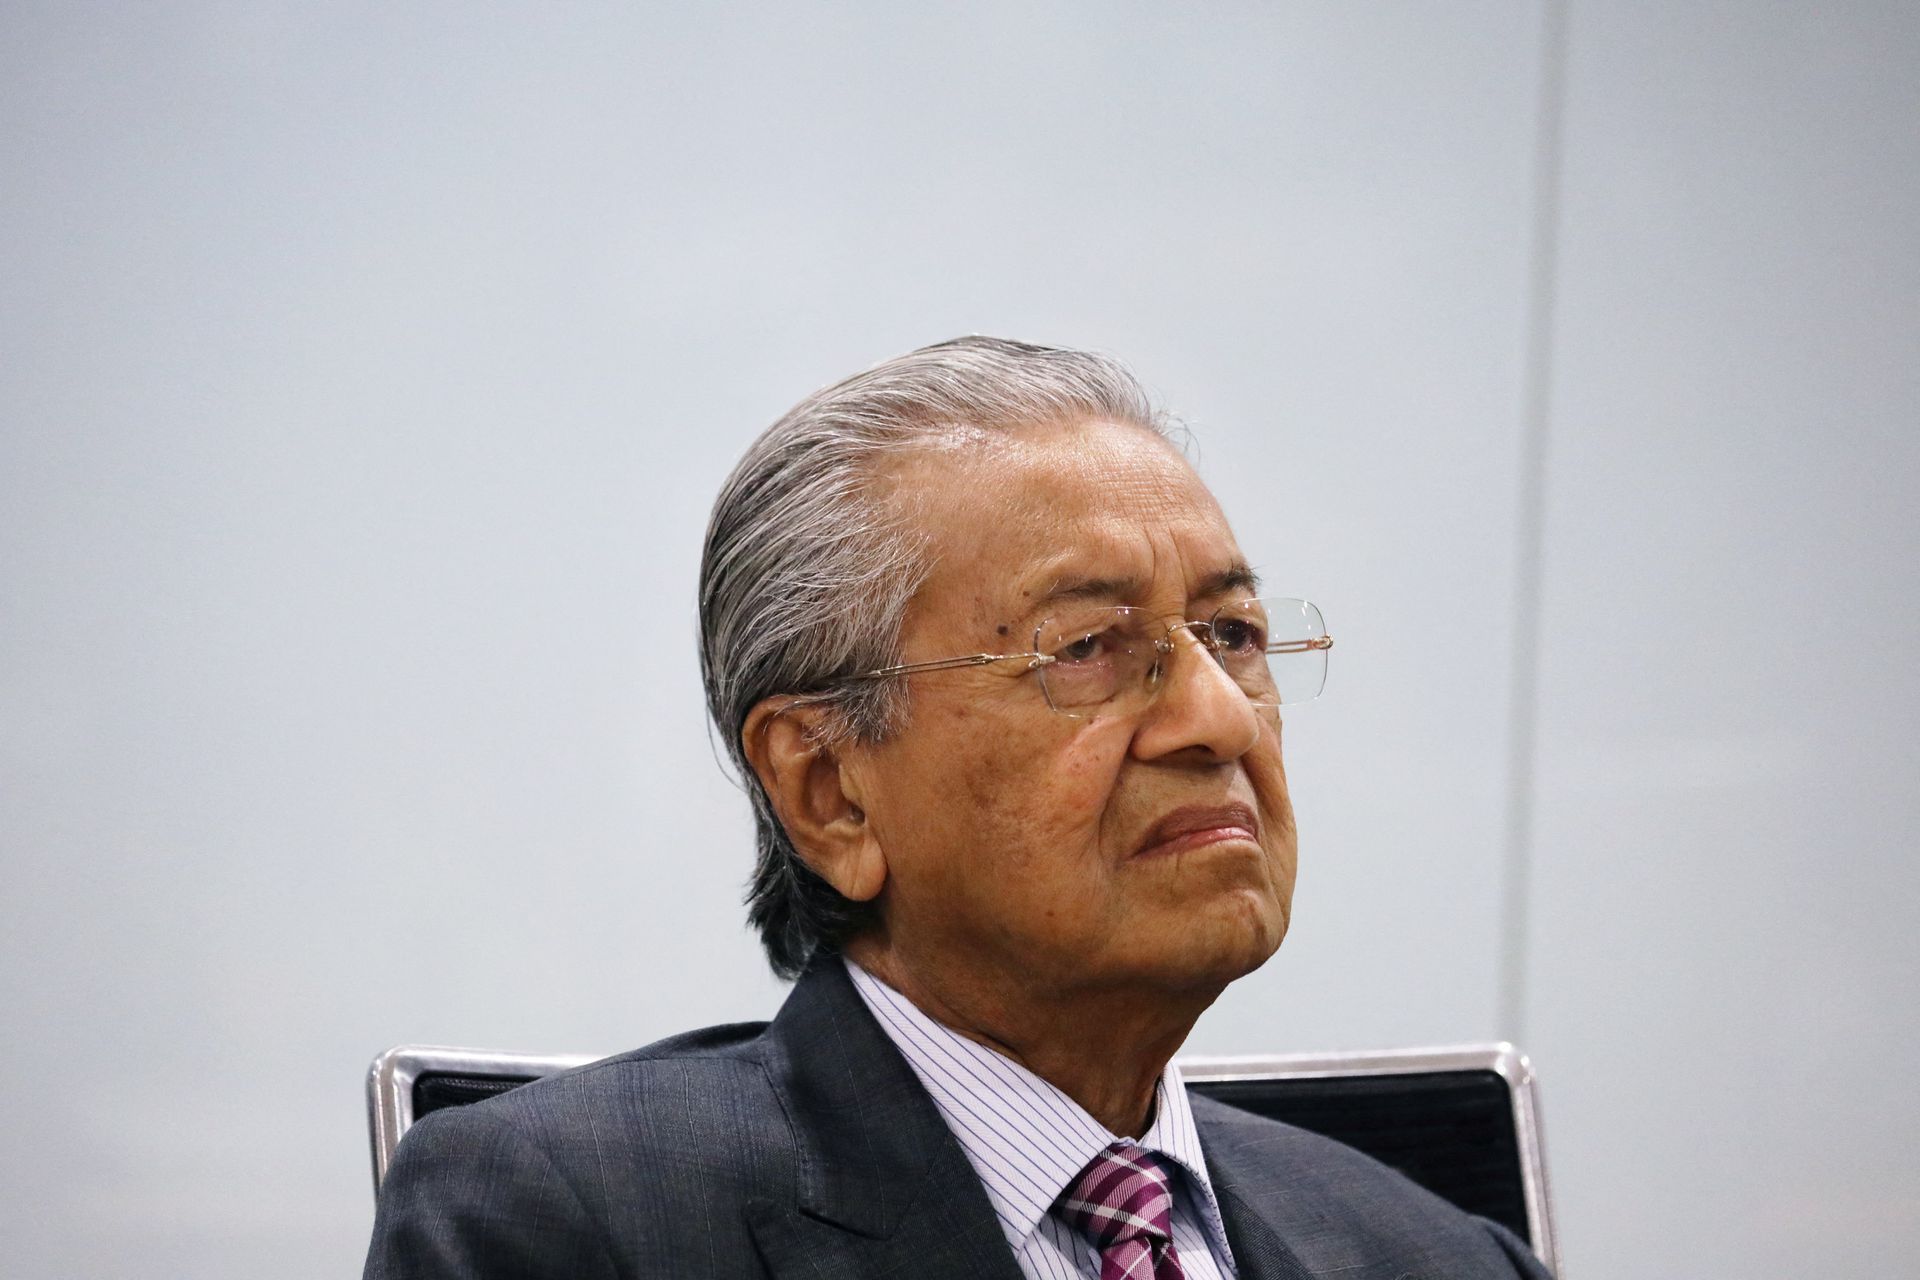 Mahathir Bin Mohamad, antigo primeiro-ministro da Malásia: “Os ocidentais descartaram os seus valores”